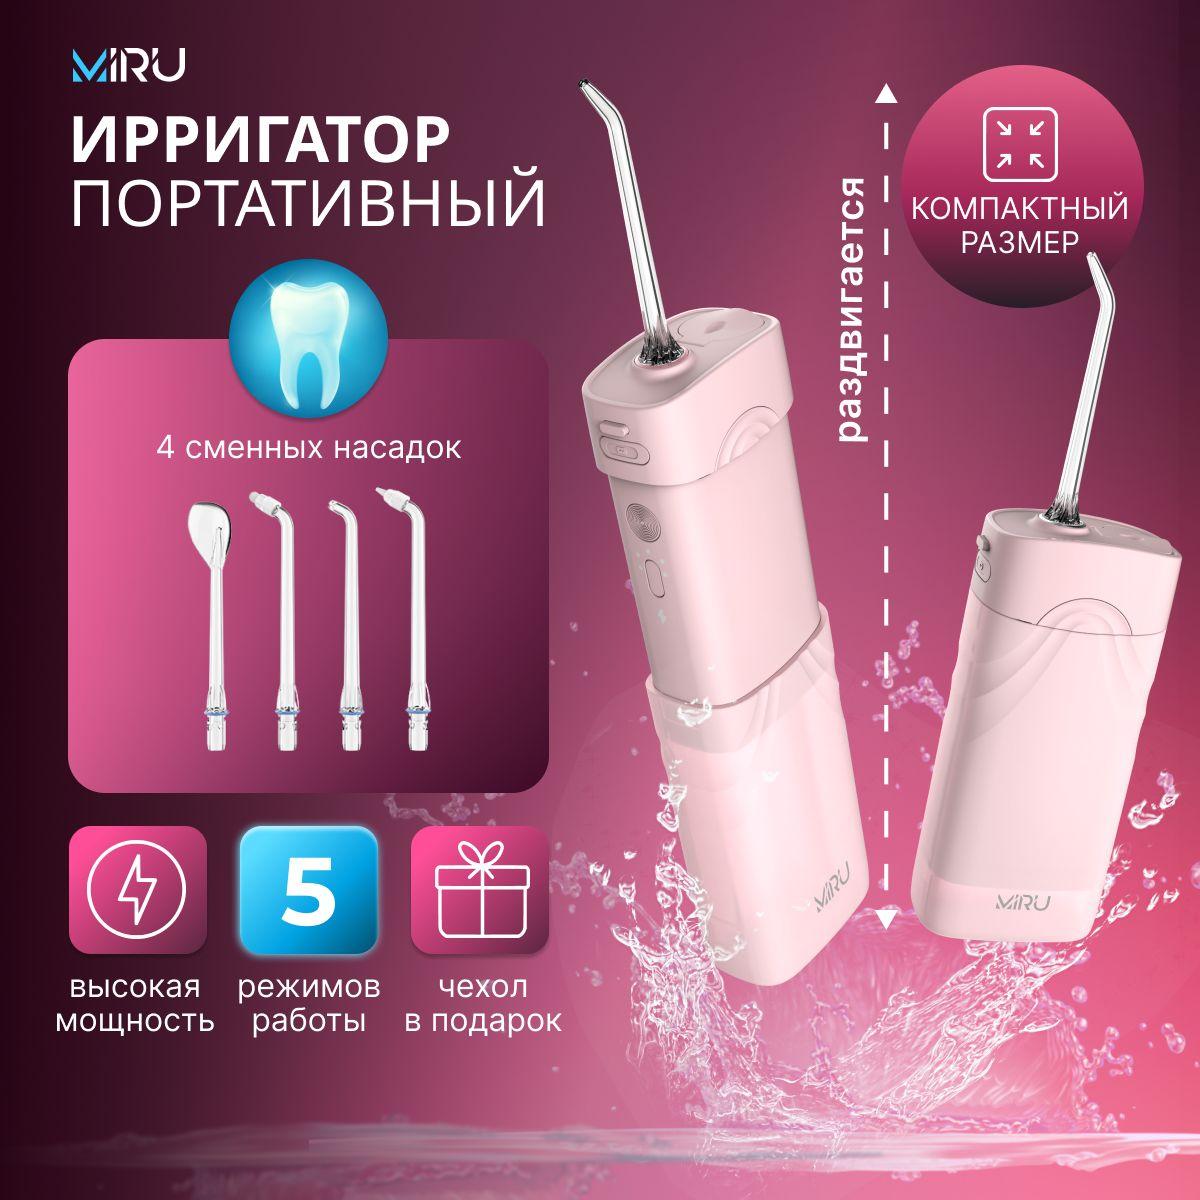 Ирригатор для полости рта портативный МИНИ MIRU BIP-003, 5 режимов, 4 насадки и чехол в комплекте, розовый